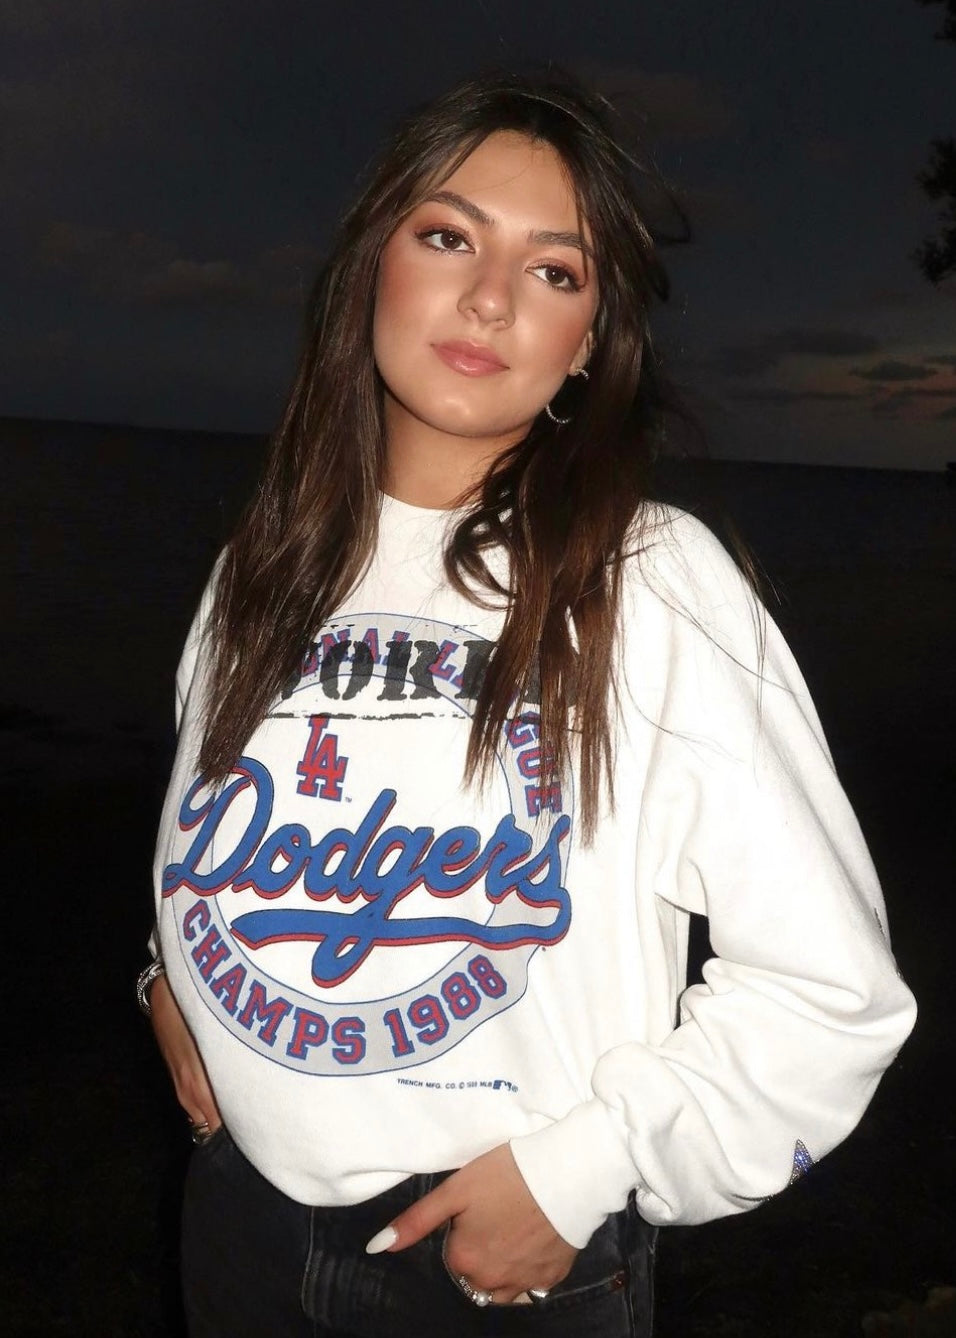 Vintage Los Angeles Dodgers Shirt Sweatshirt Hoodie